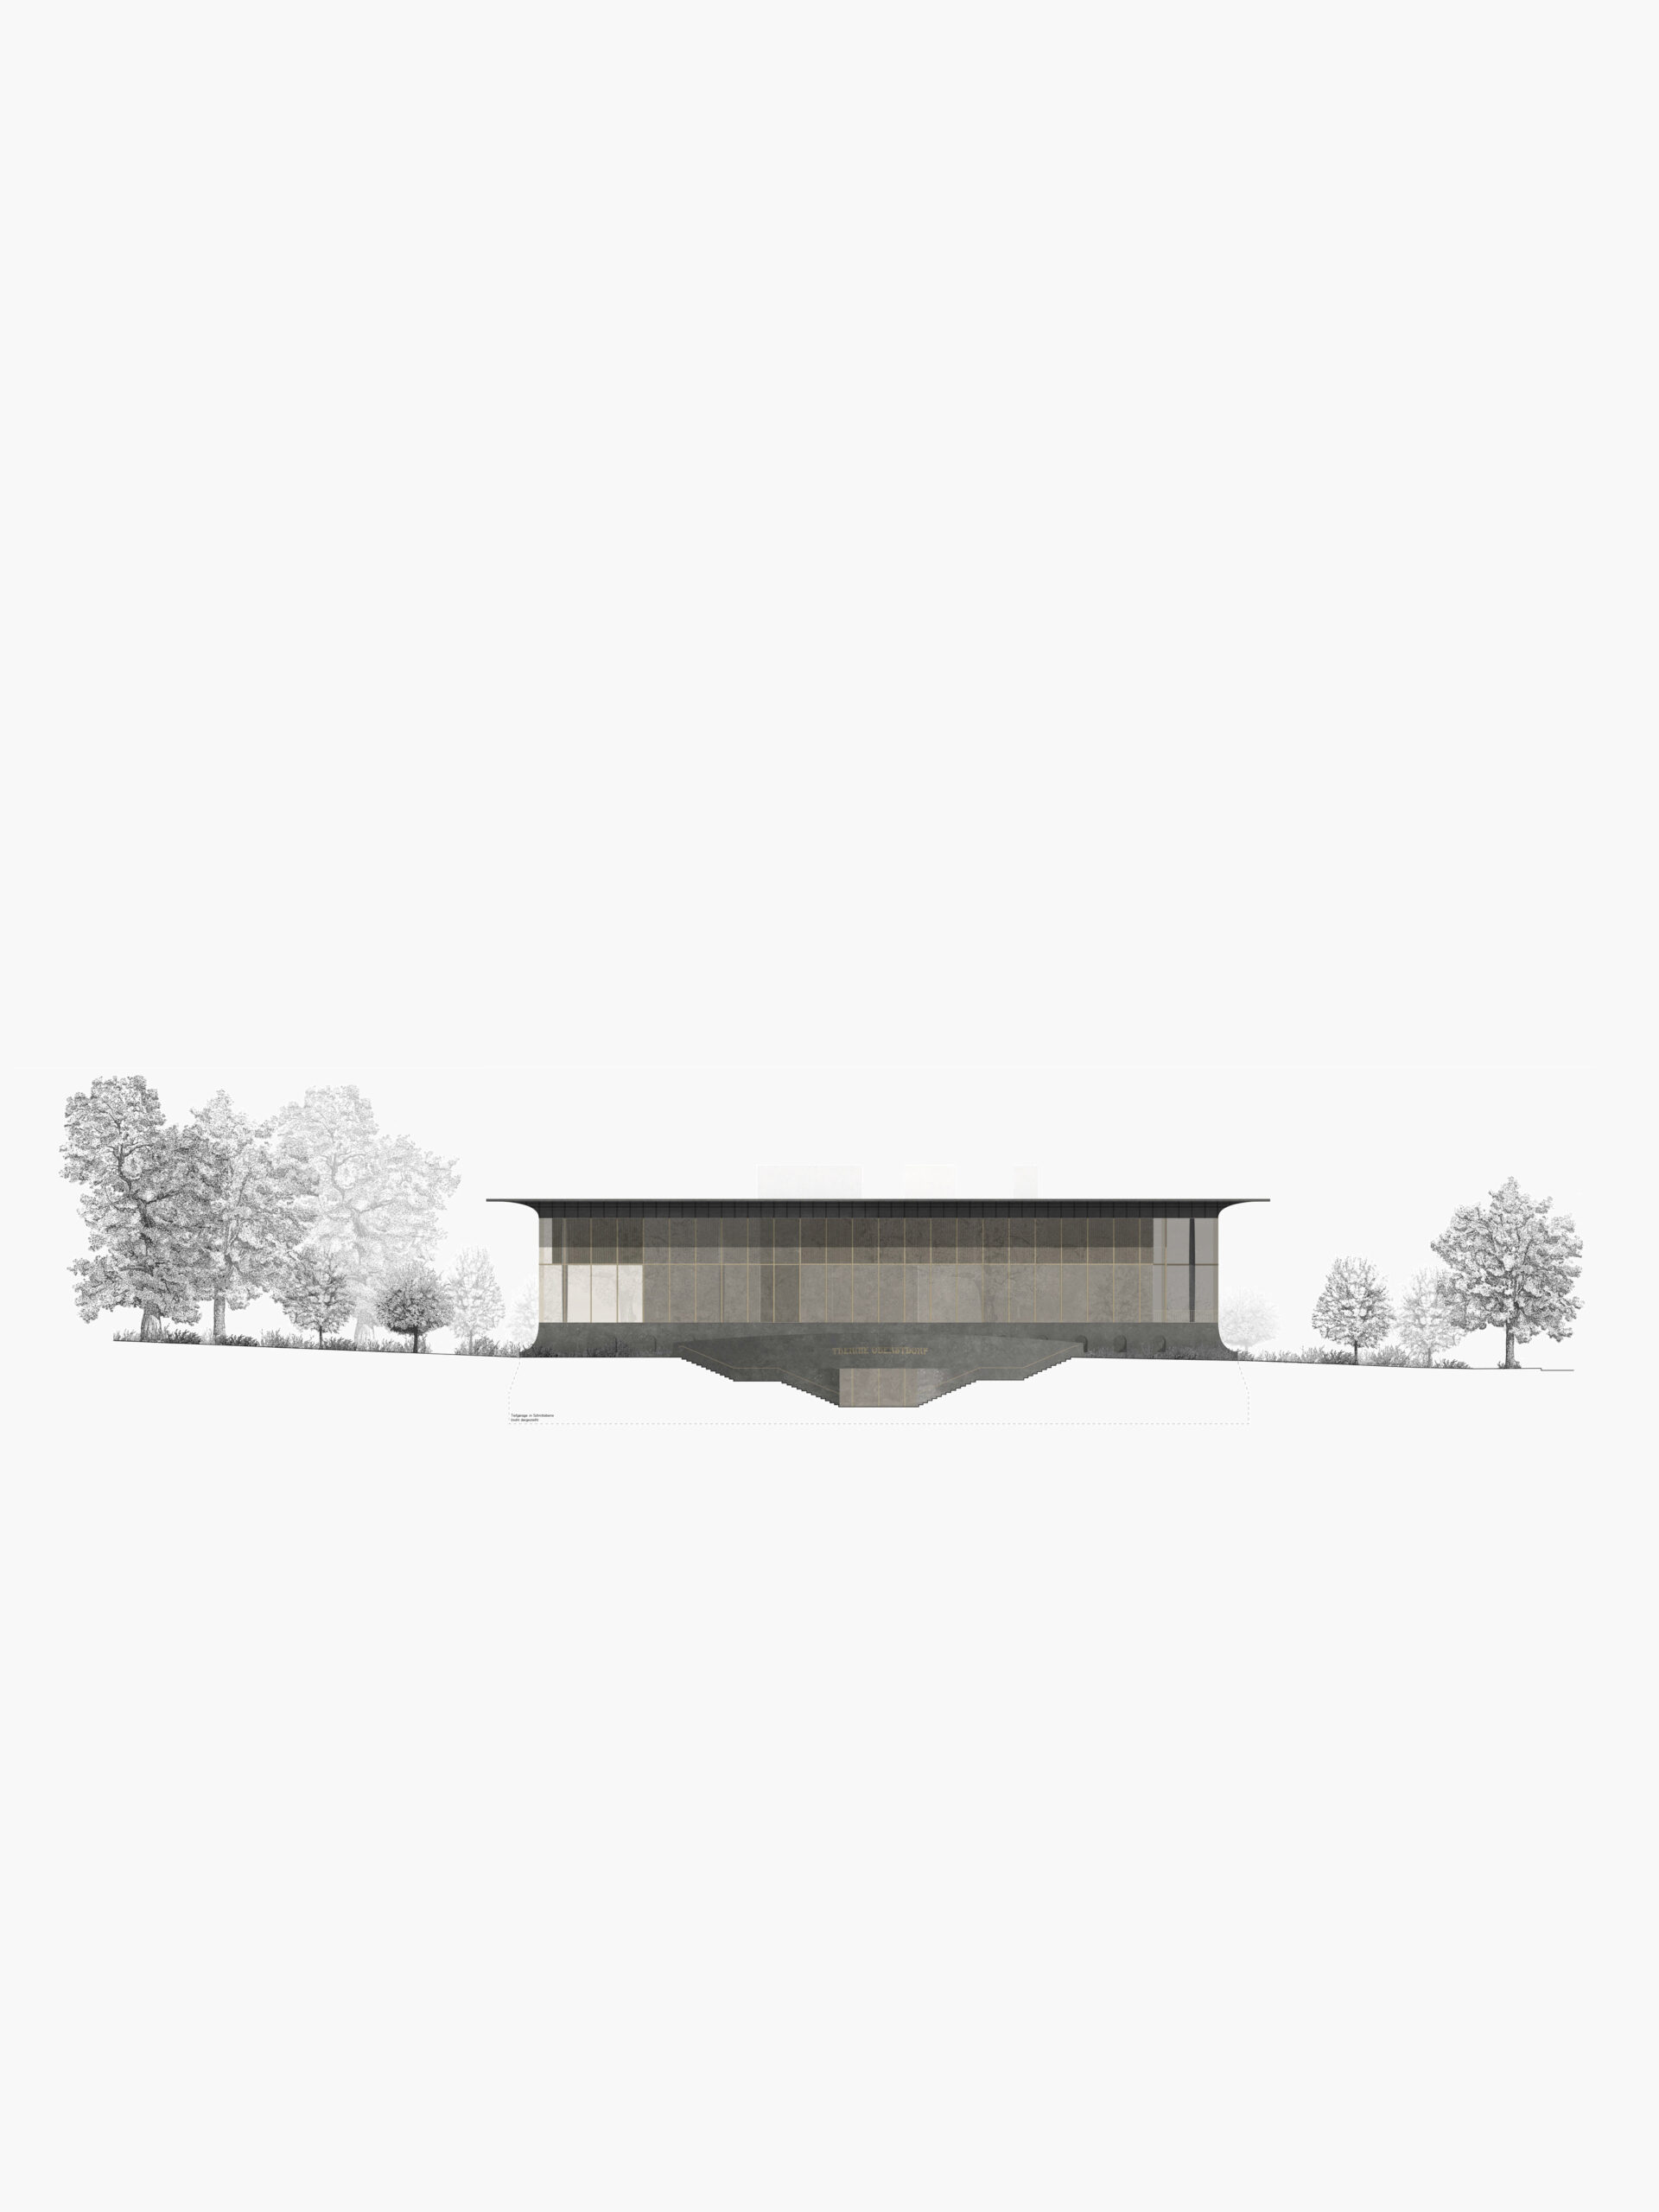 Michael-Becker-Architects-Architekten-Therme-Oberstdorf-Ansicht-Nord-hoch